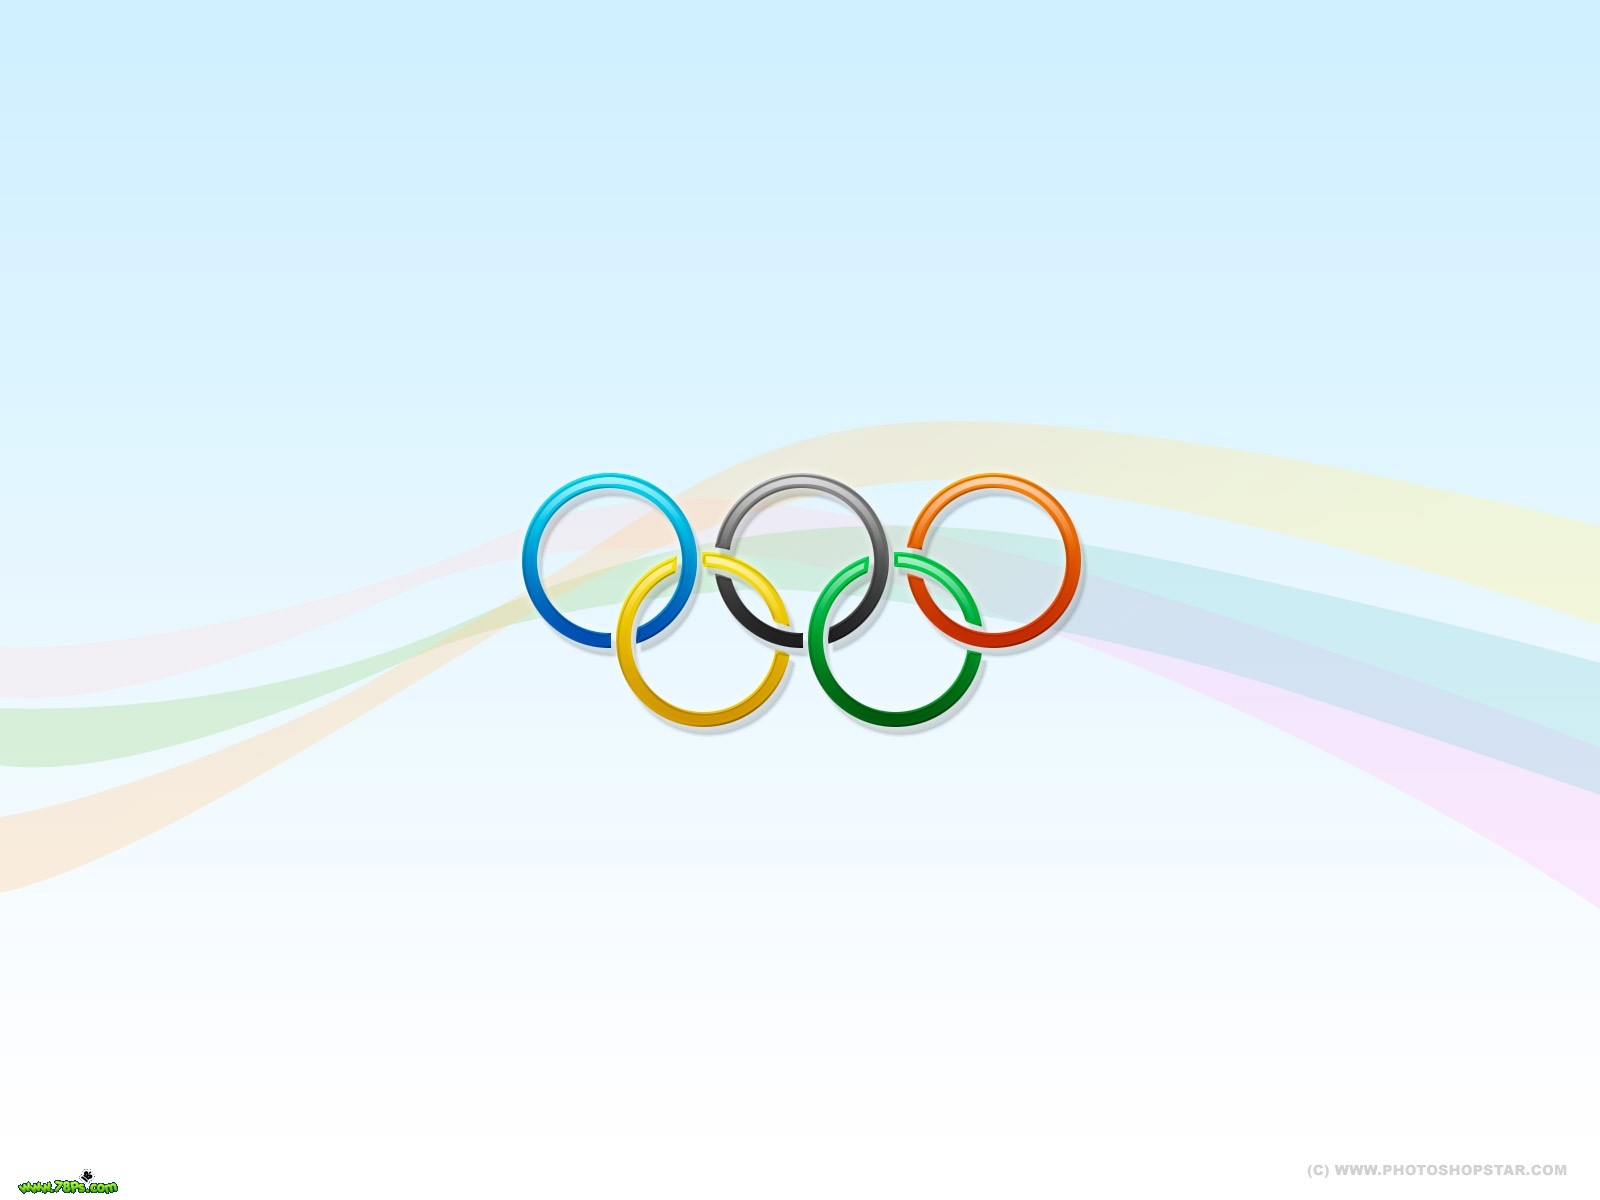 photoshop制作奥运五环壁纸教程